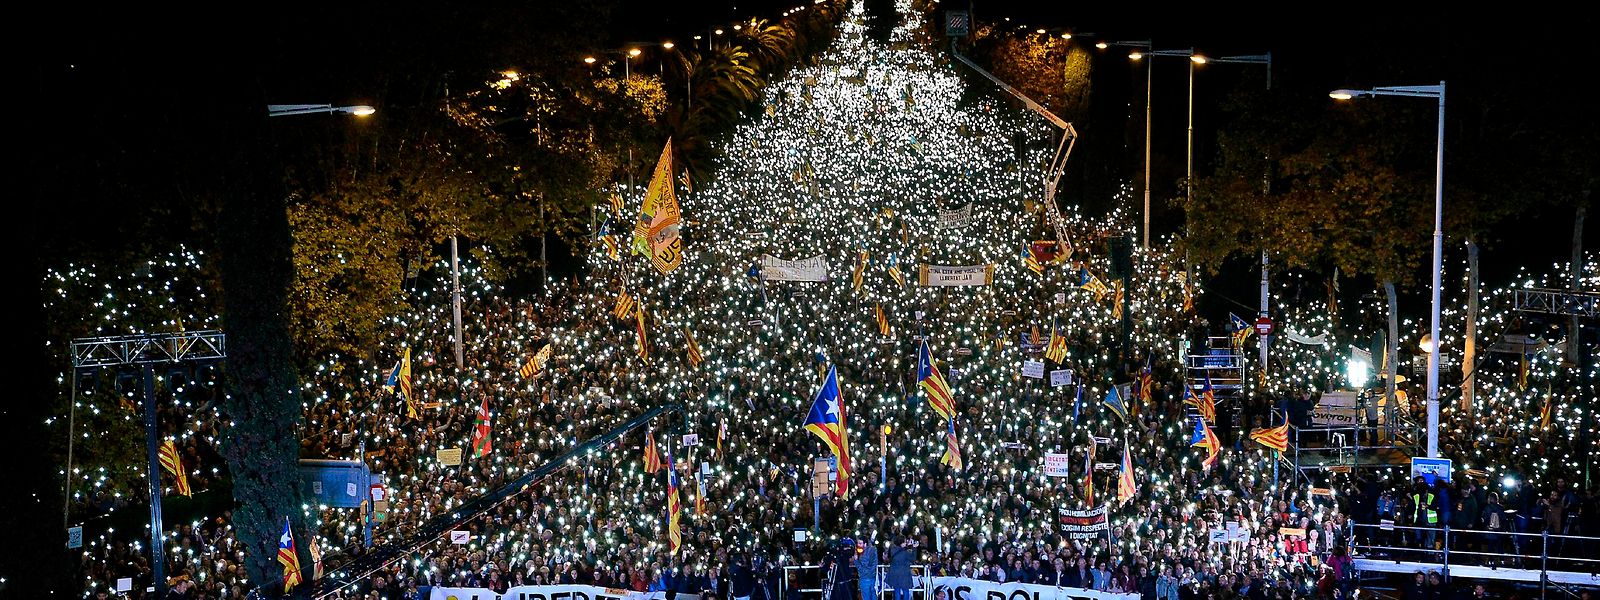 Nach Polizeiangaben gingen etwa 750 000 Menschen auf die Straße bei einer Großdemonstration Solidarität mit der abgesetzten Regionalregierung